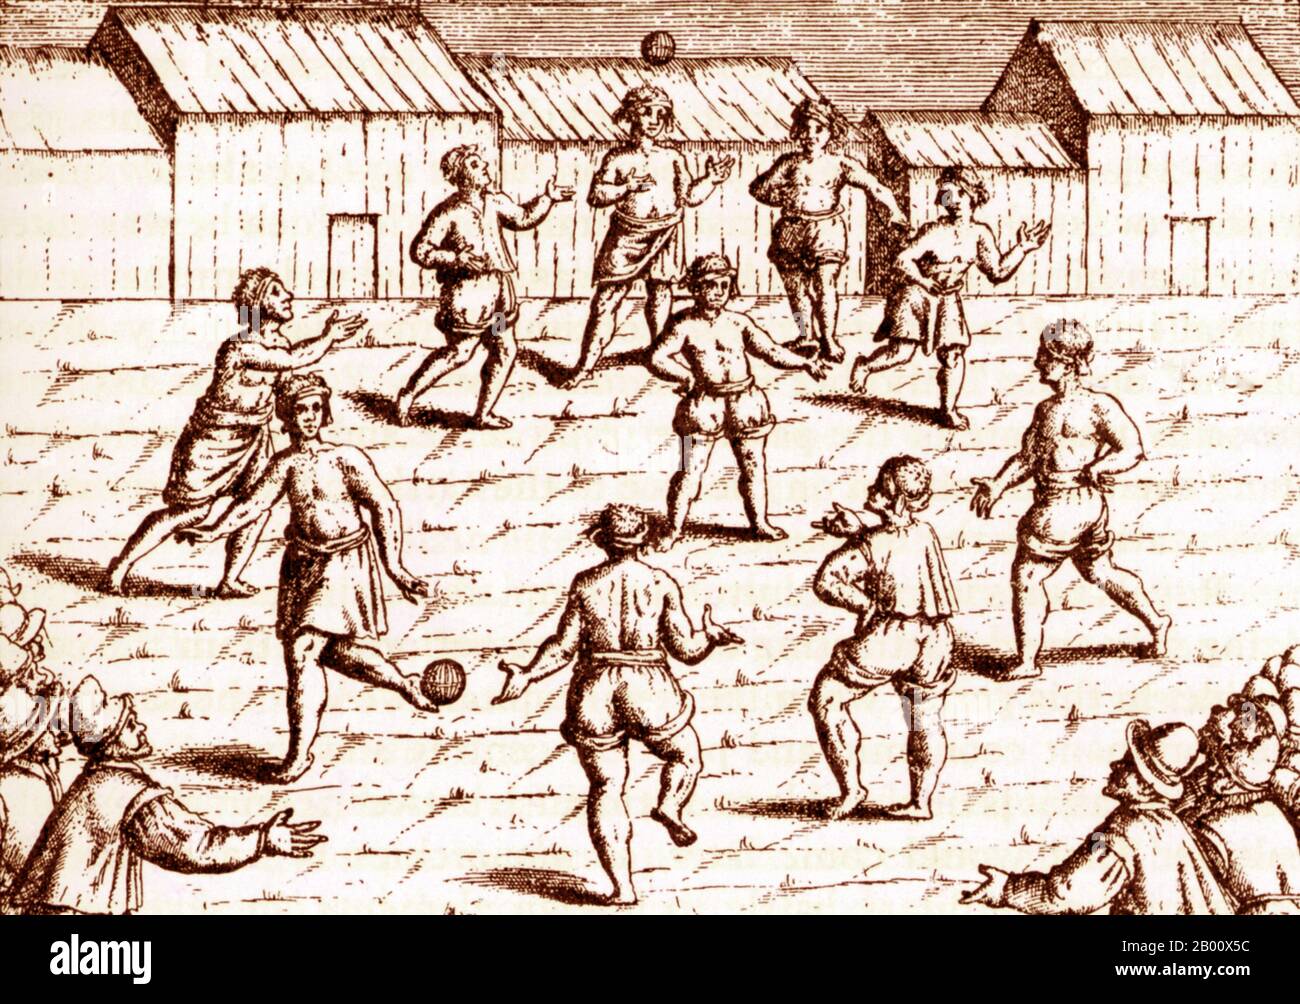 Indonesien: Ein Gemeinschaftsspiel von 'takraw', wie es holländische Reisende auf den Molukken 1599 beobachteten. Takraw, auch bekannt als 'sepak raga' oder 'sepak takraw', ist ein Mannschaftsspiel, das wie Volleyball gespielt wird, aber mit einem Rattanball. Die Spieler dürfen ihre Hände nicht benutzen, sondern nur ihre Füße, ihren Kopf und ihre Knie. Der Sport ist in Südostasien beheimatet. Stockfoto